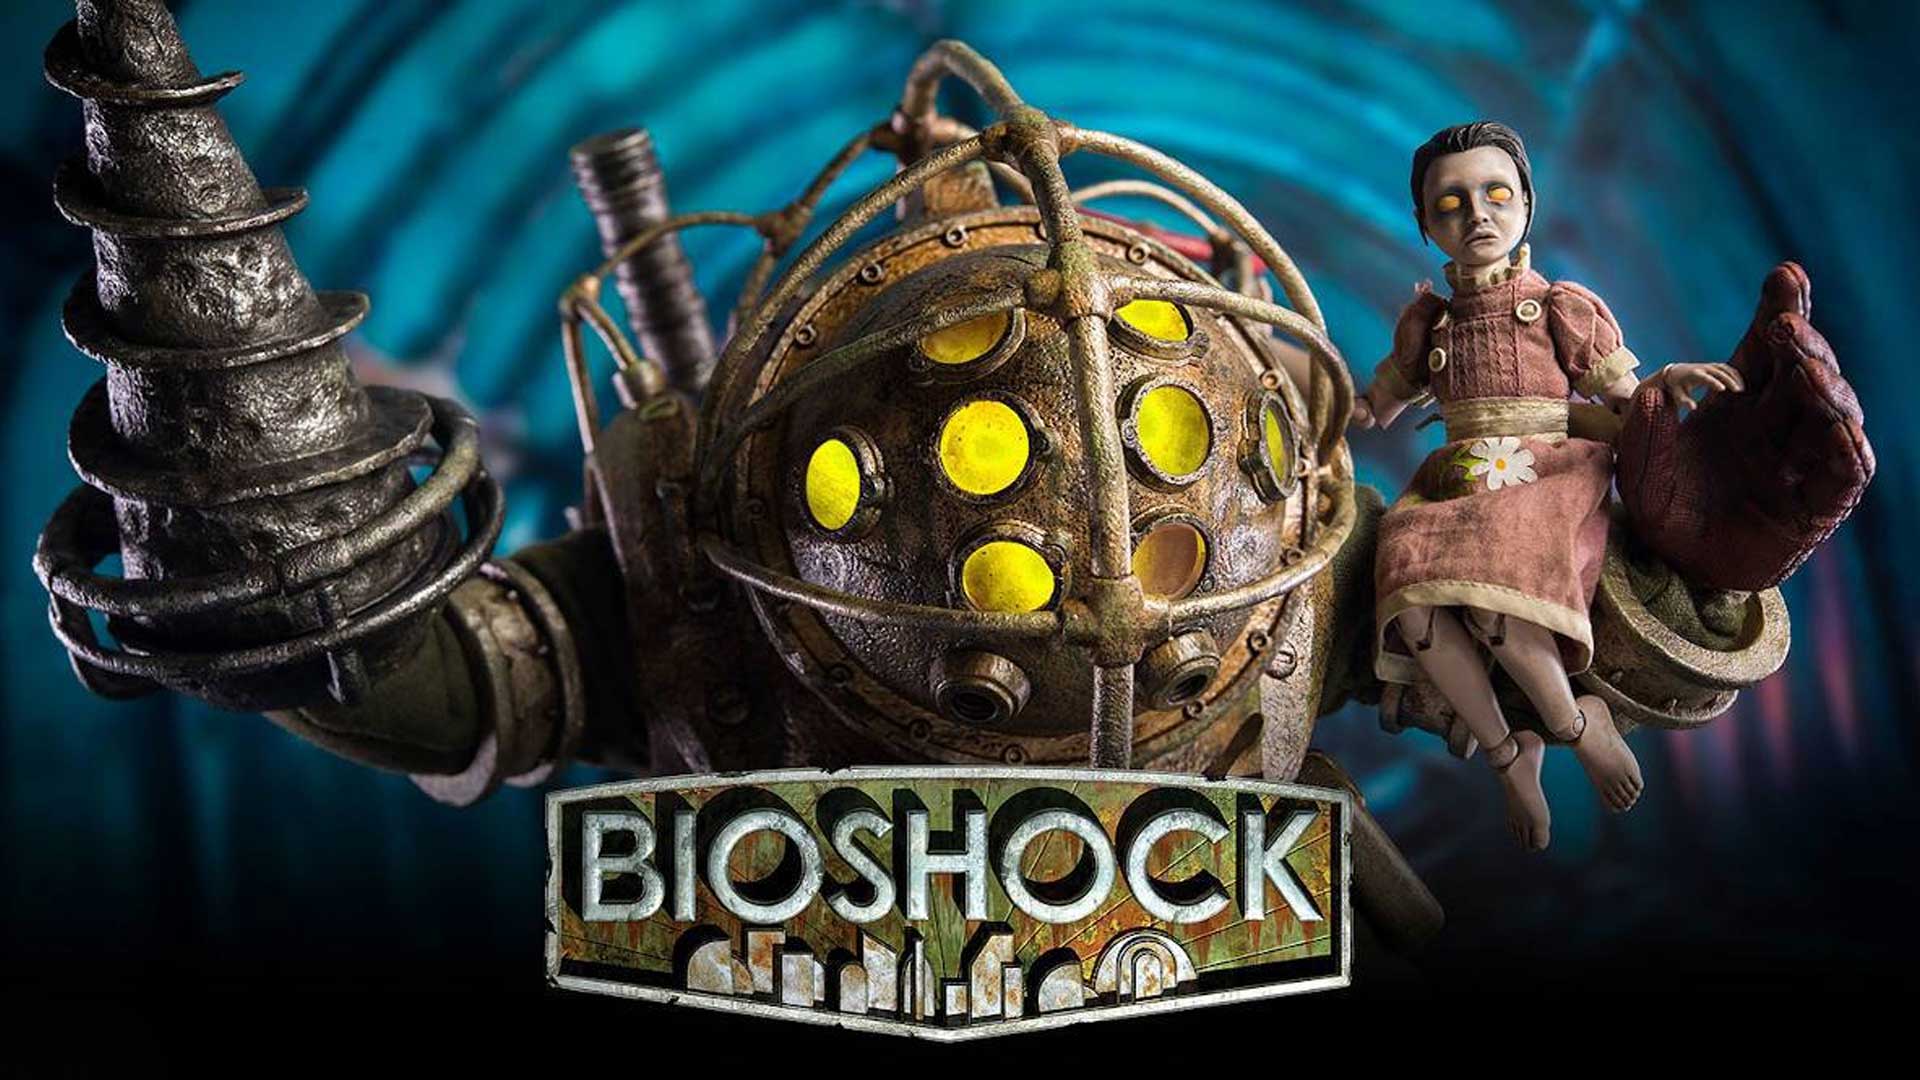 شایعه: نسخه ریمستر بازی BioShock در حال تولید است